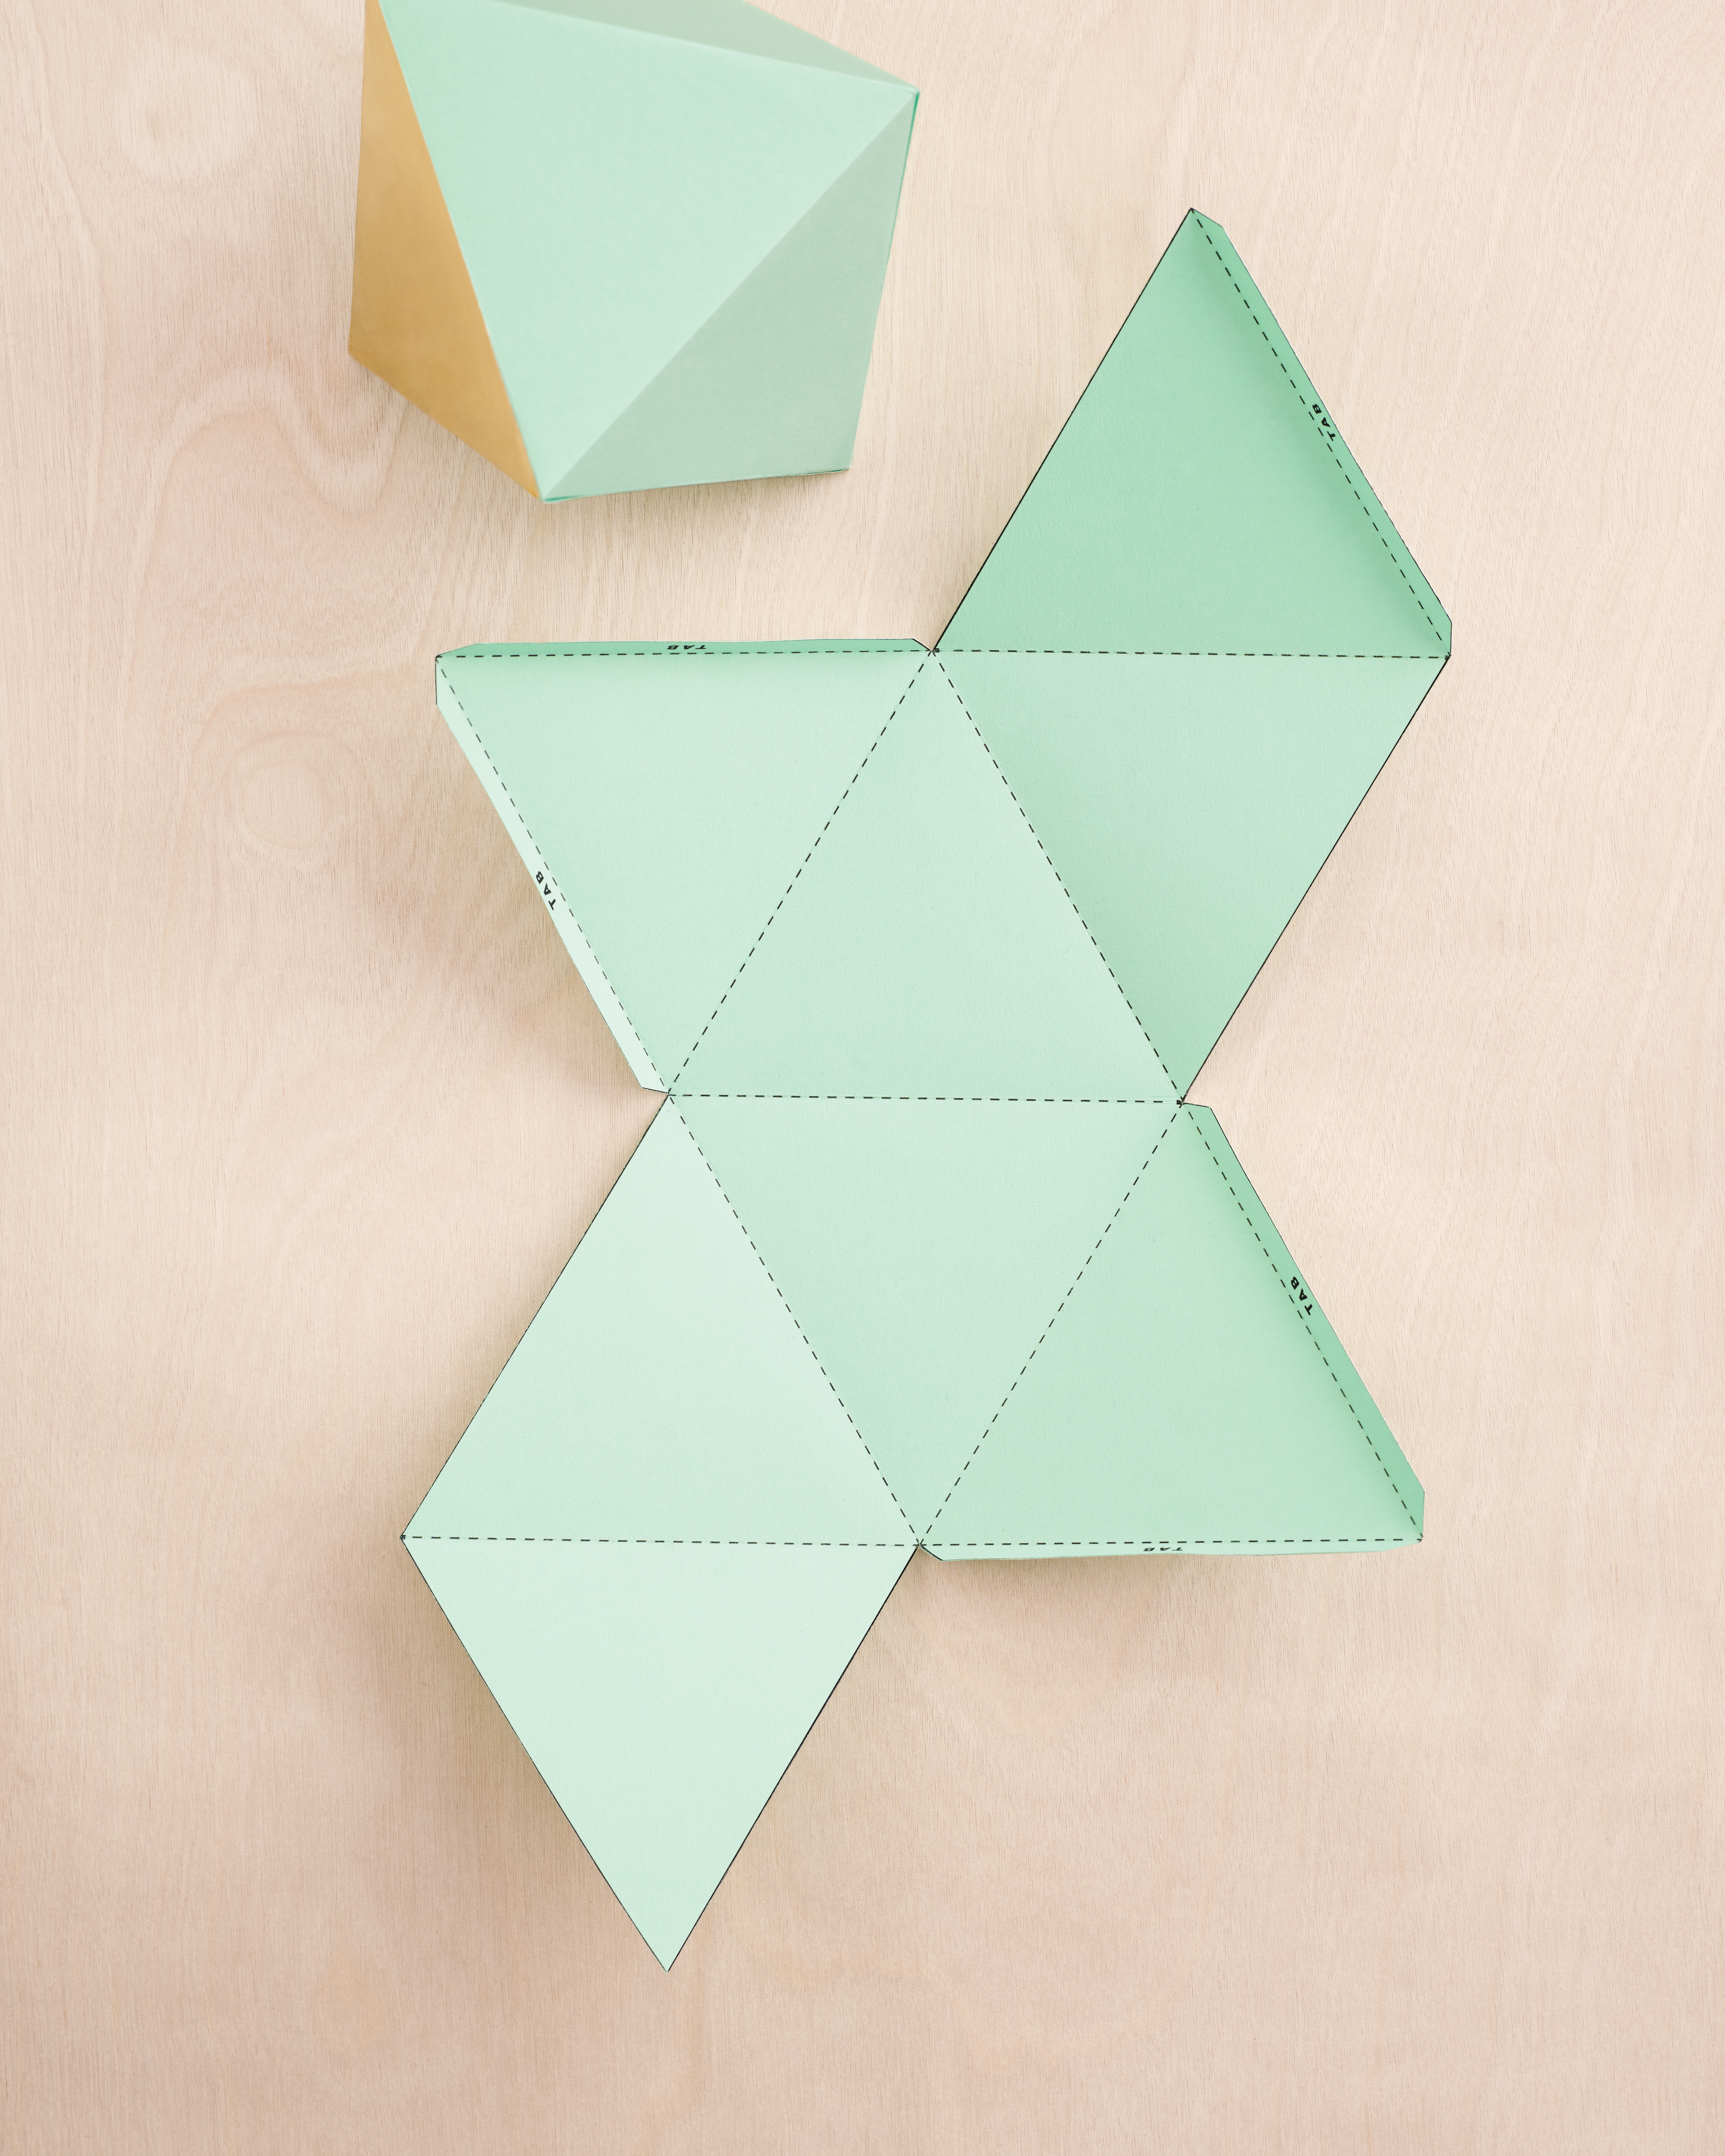 3D Origami Wedding 10 Diy Origami Ideas For Your Wedding Martha Stewart Weddings